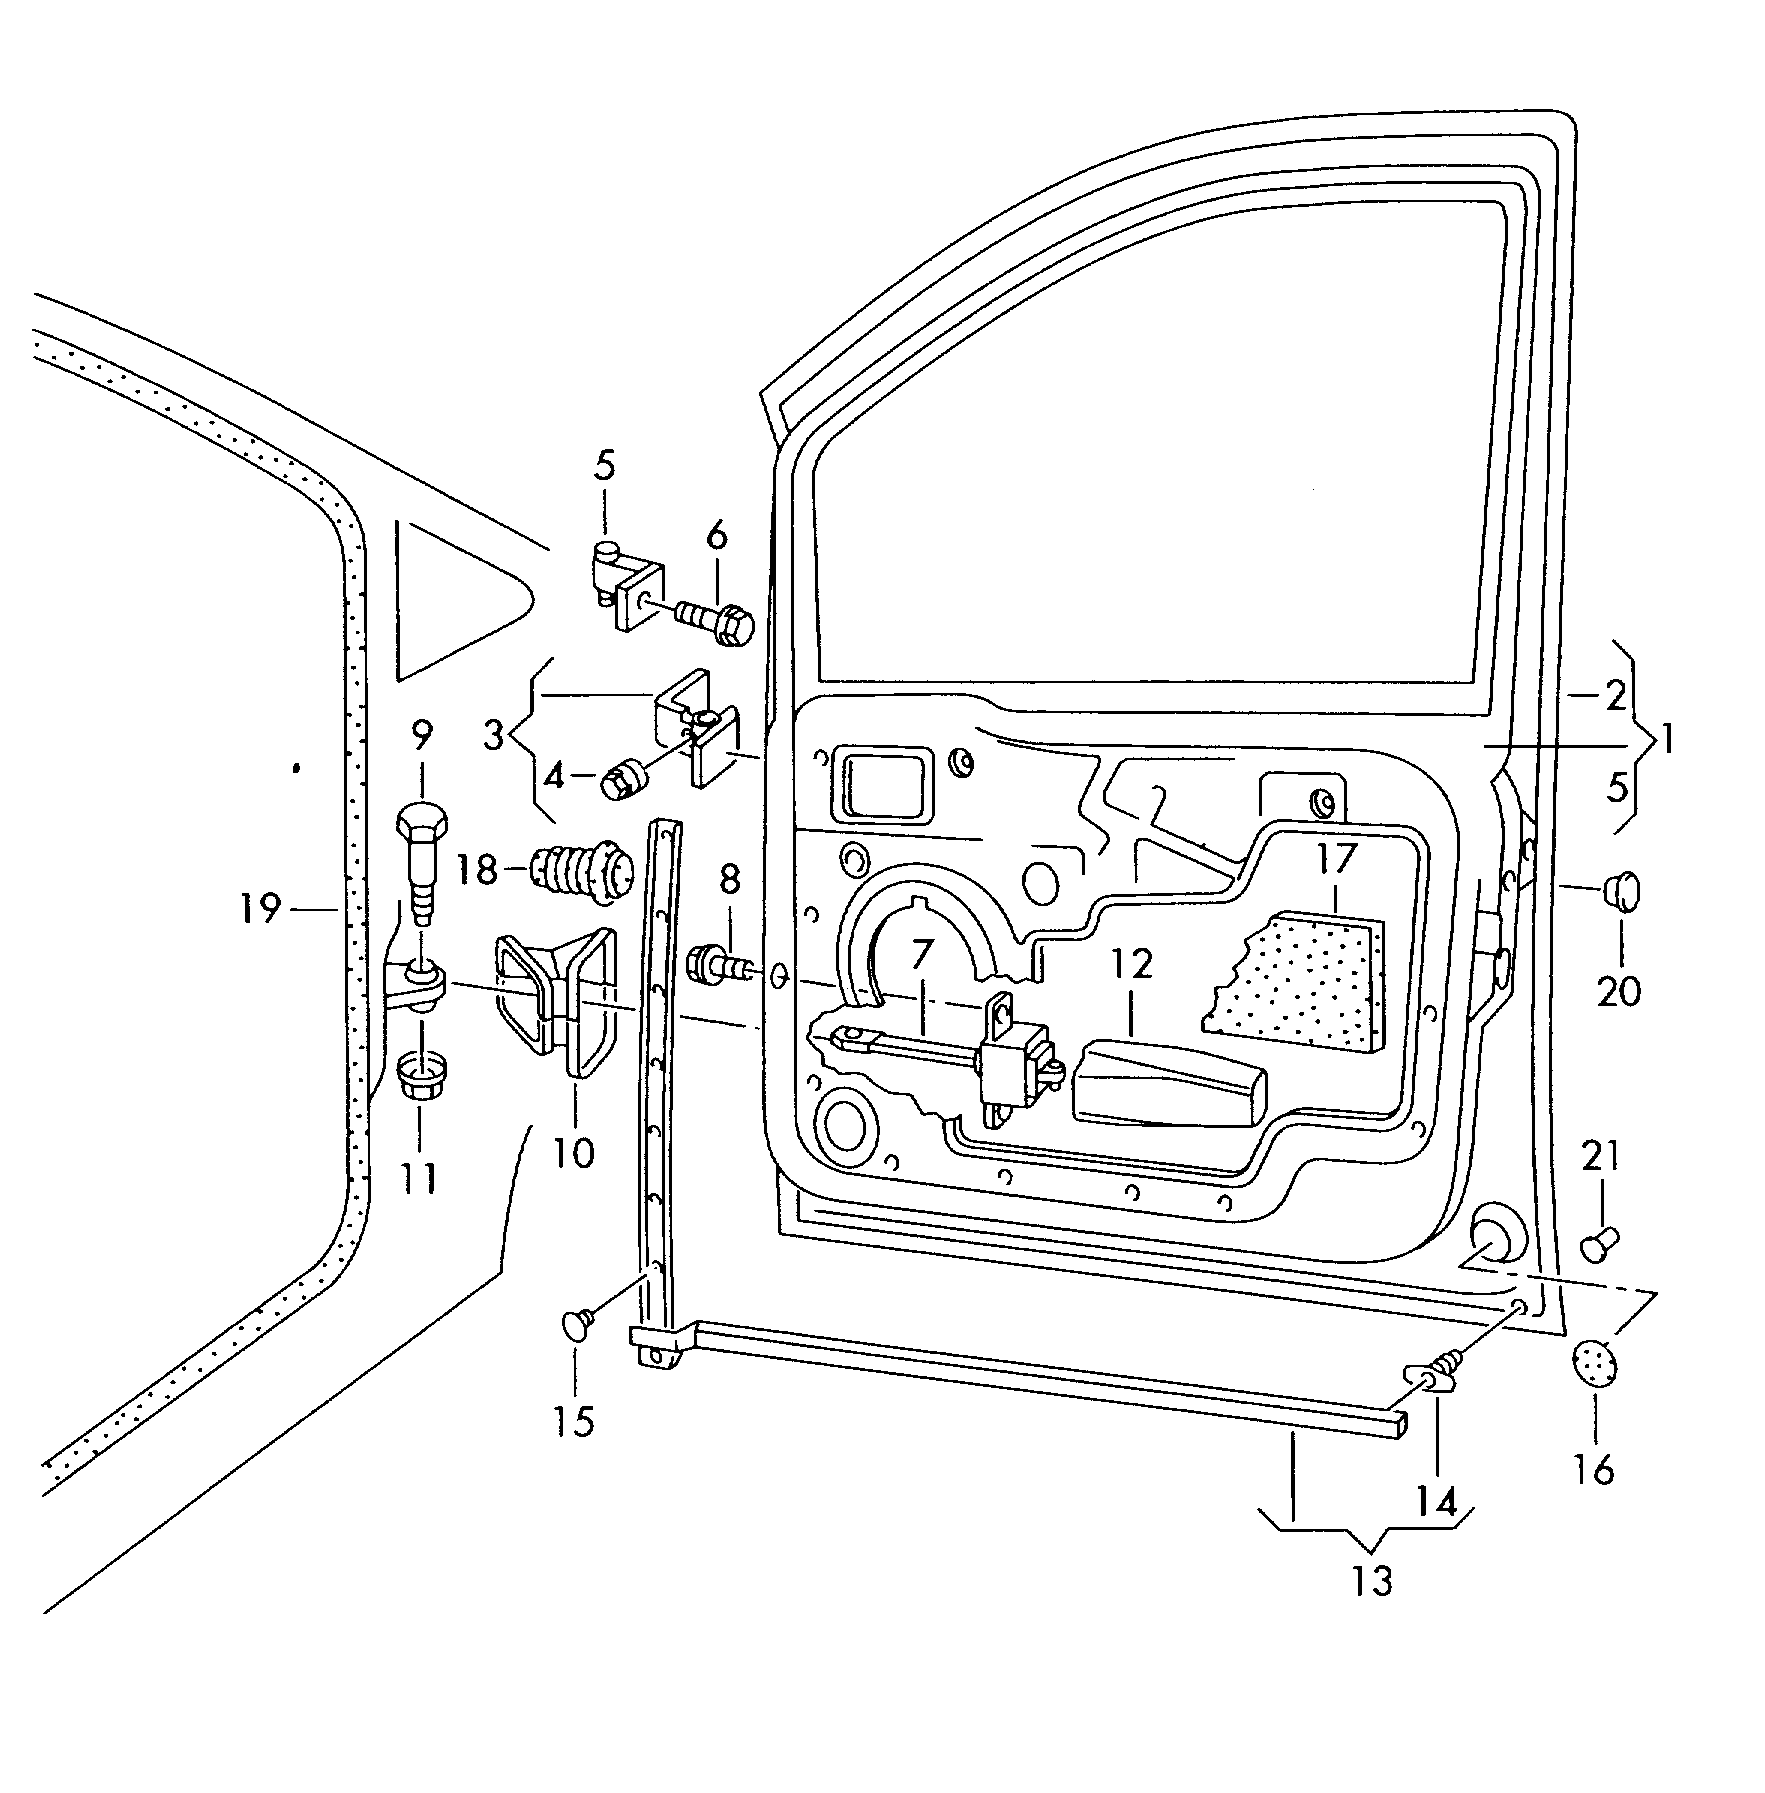 车门; 车门铰链; 车门密封条; 车门限位器 - Alhambra(AL)  